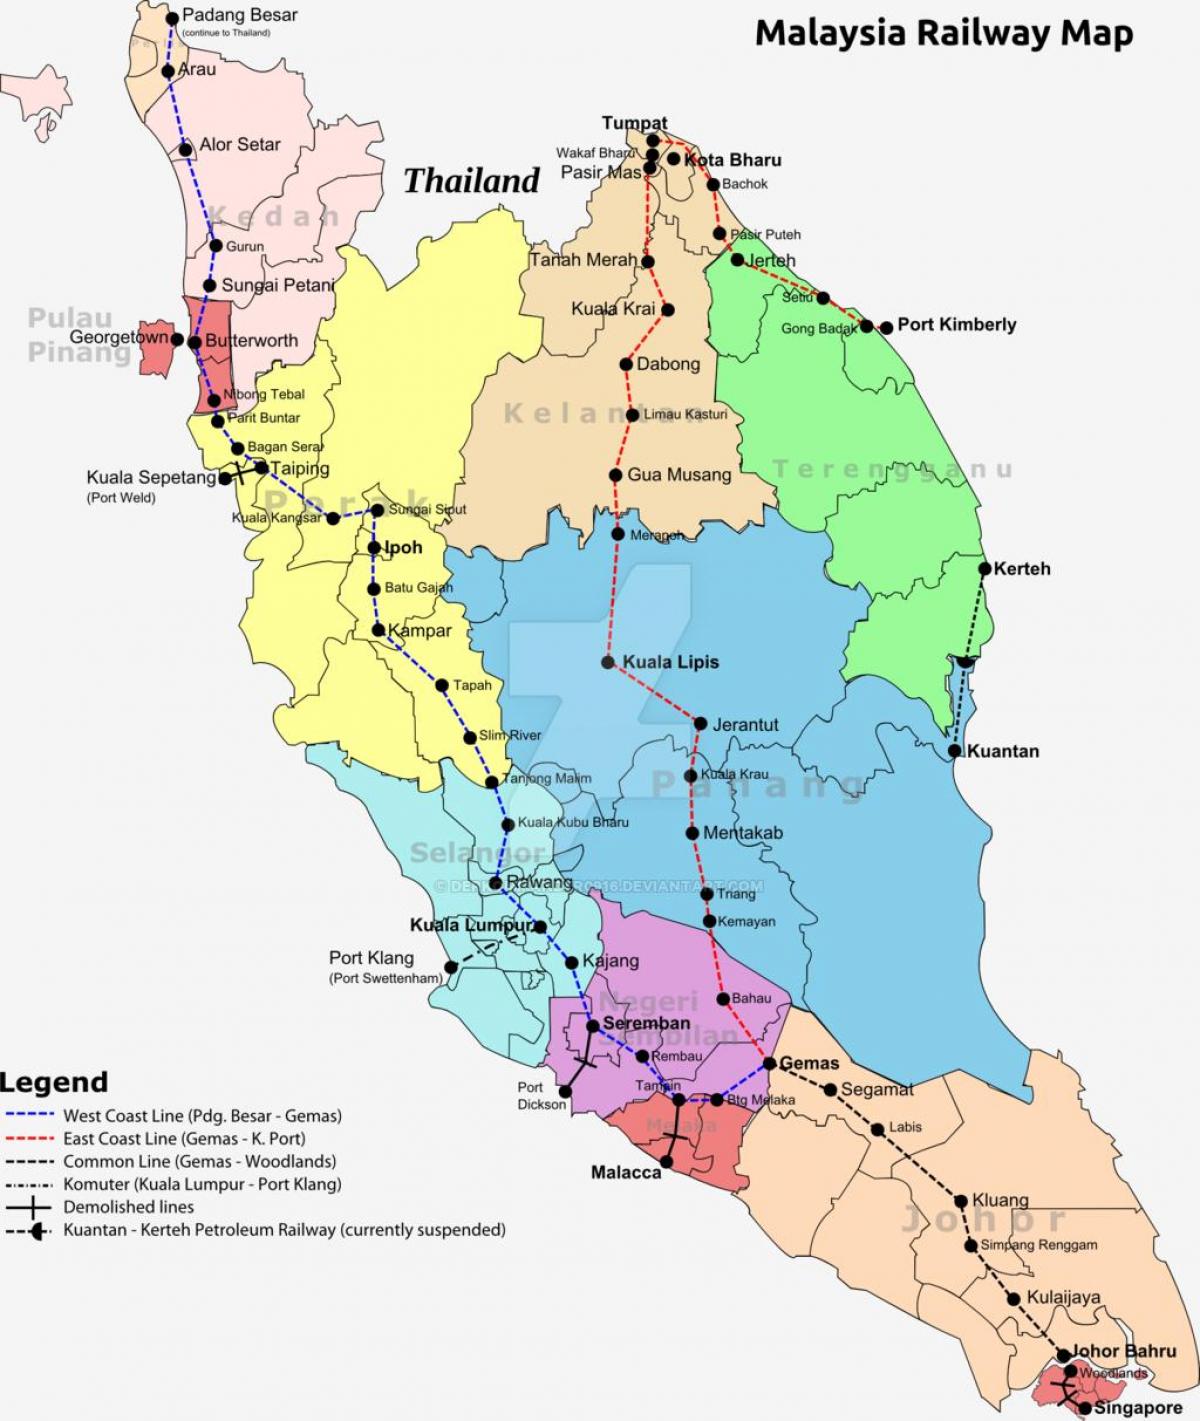 آموزش نقشه مالزی